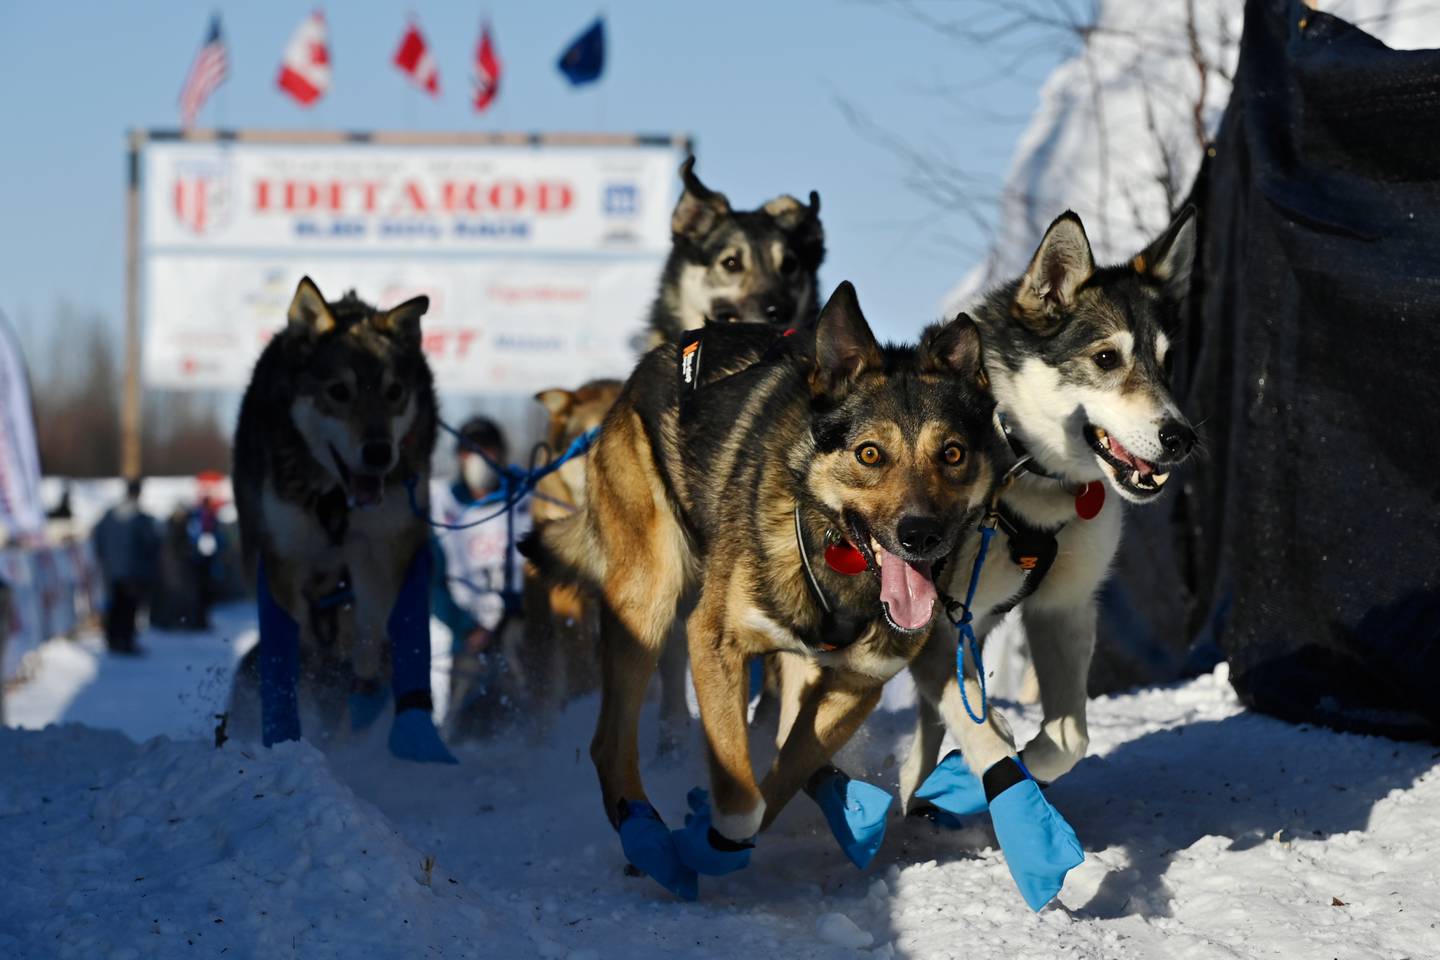 Iditarod 2021, Iditarod Trail Sled Dog Race, Willow, musher